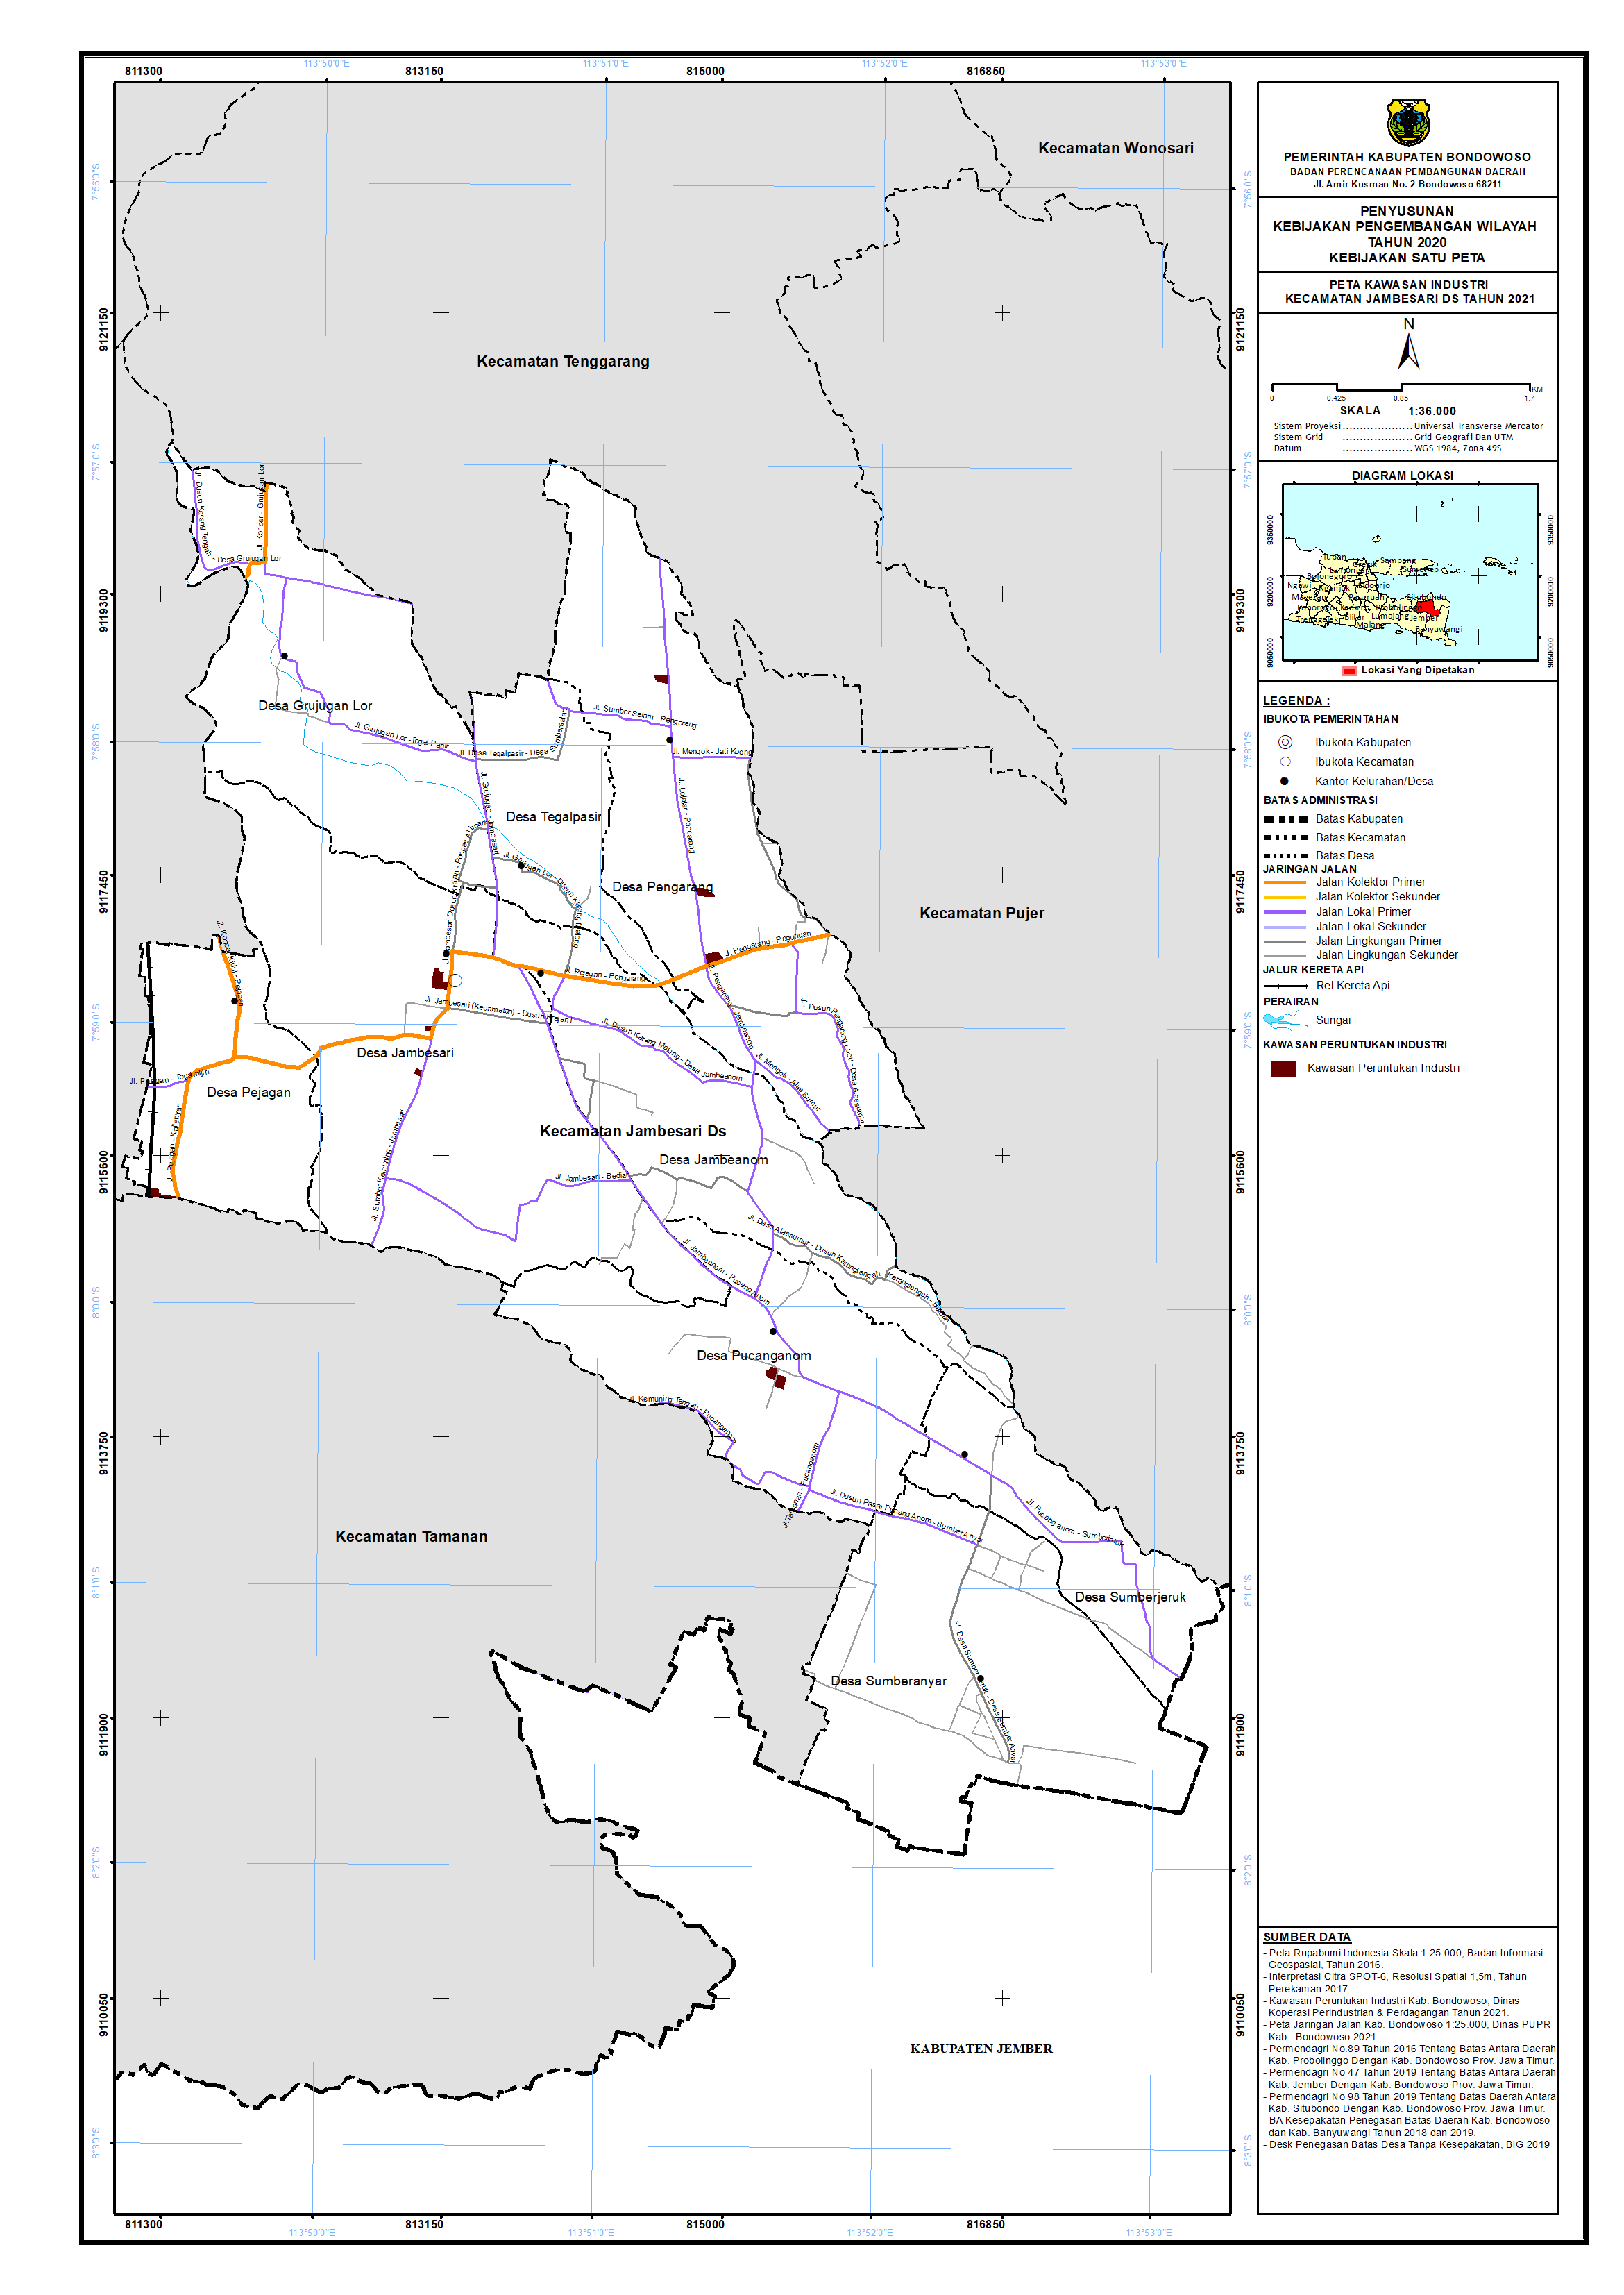 Peta Kawasan Industri Kecamatan Jambesari DS.png